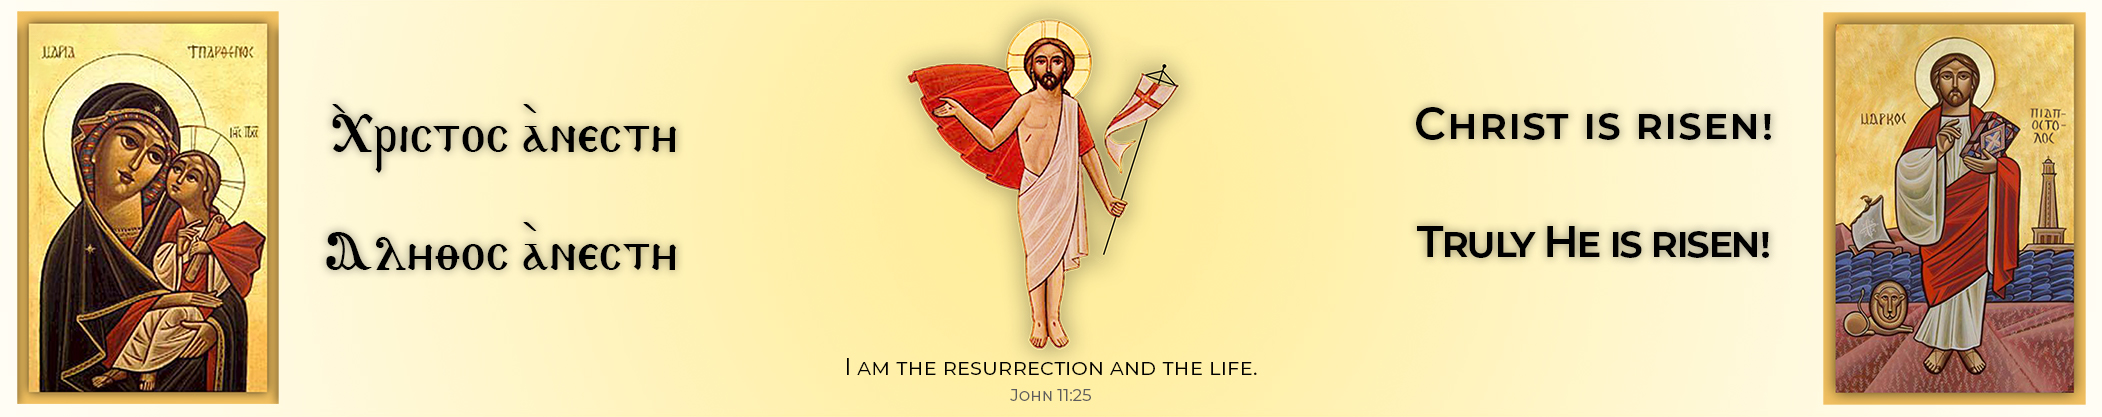 Resurrection-Banner